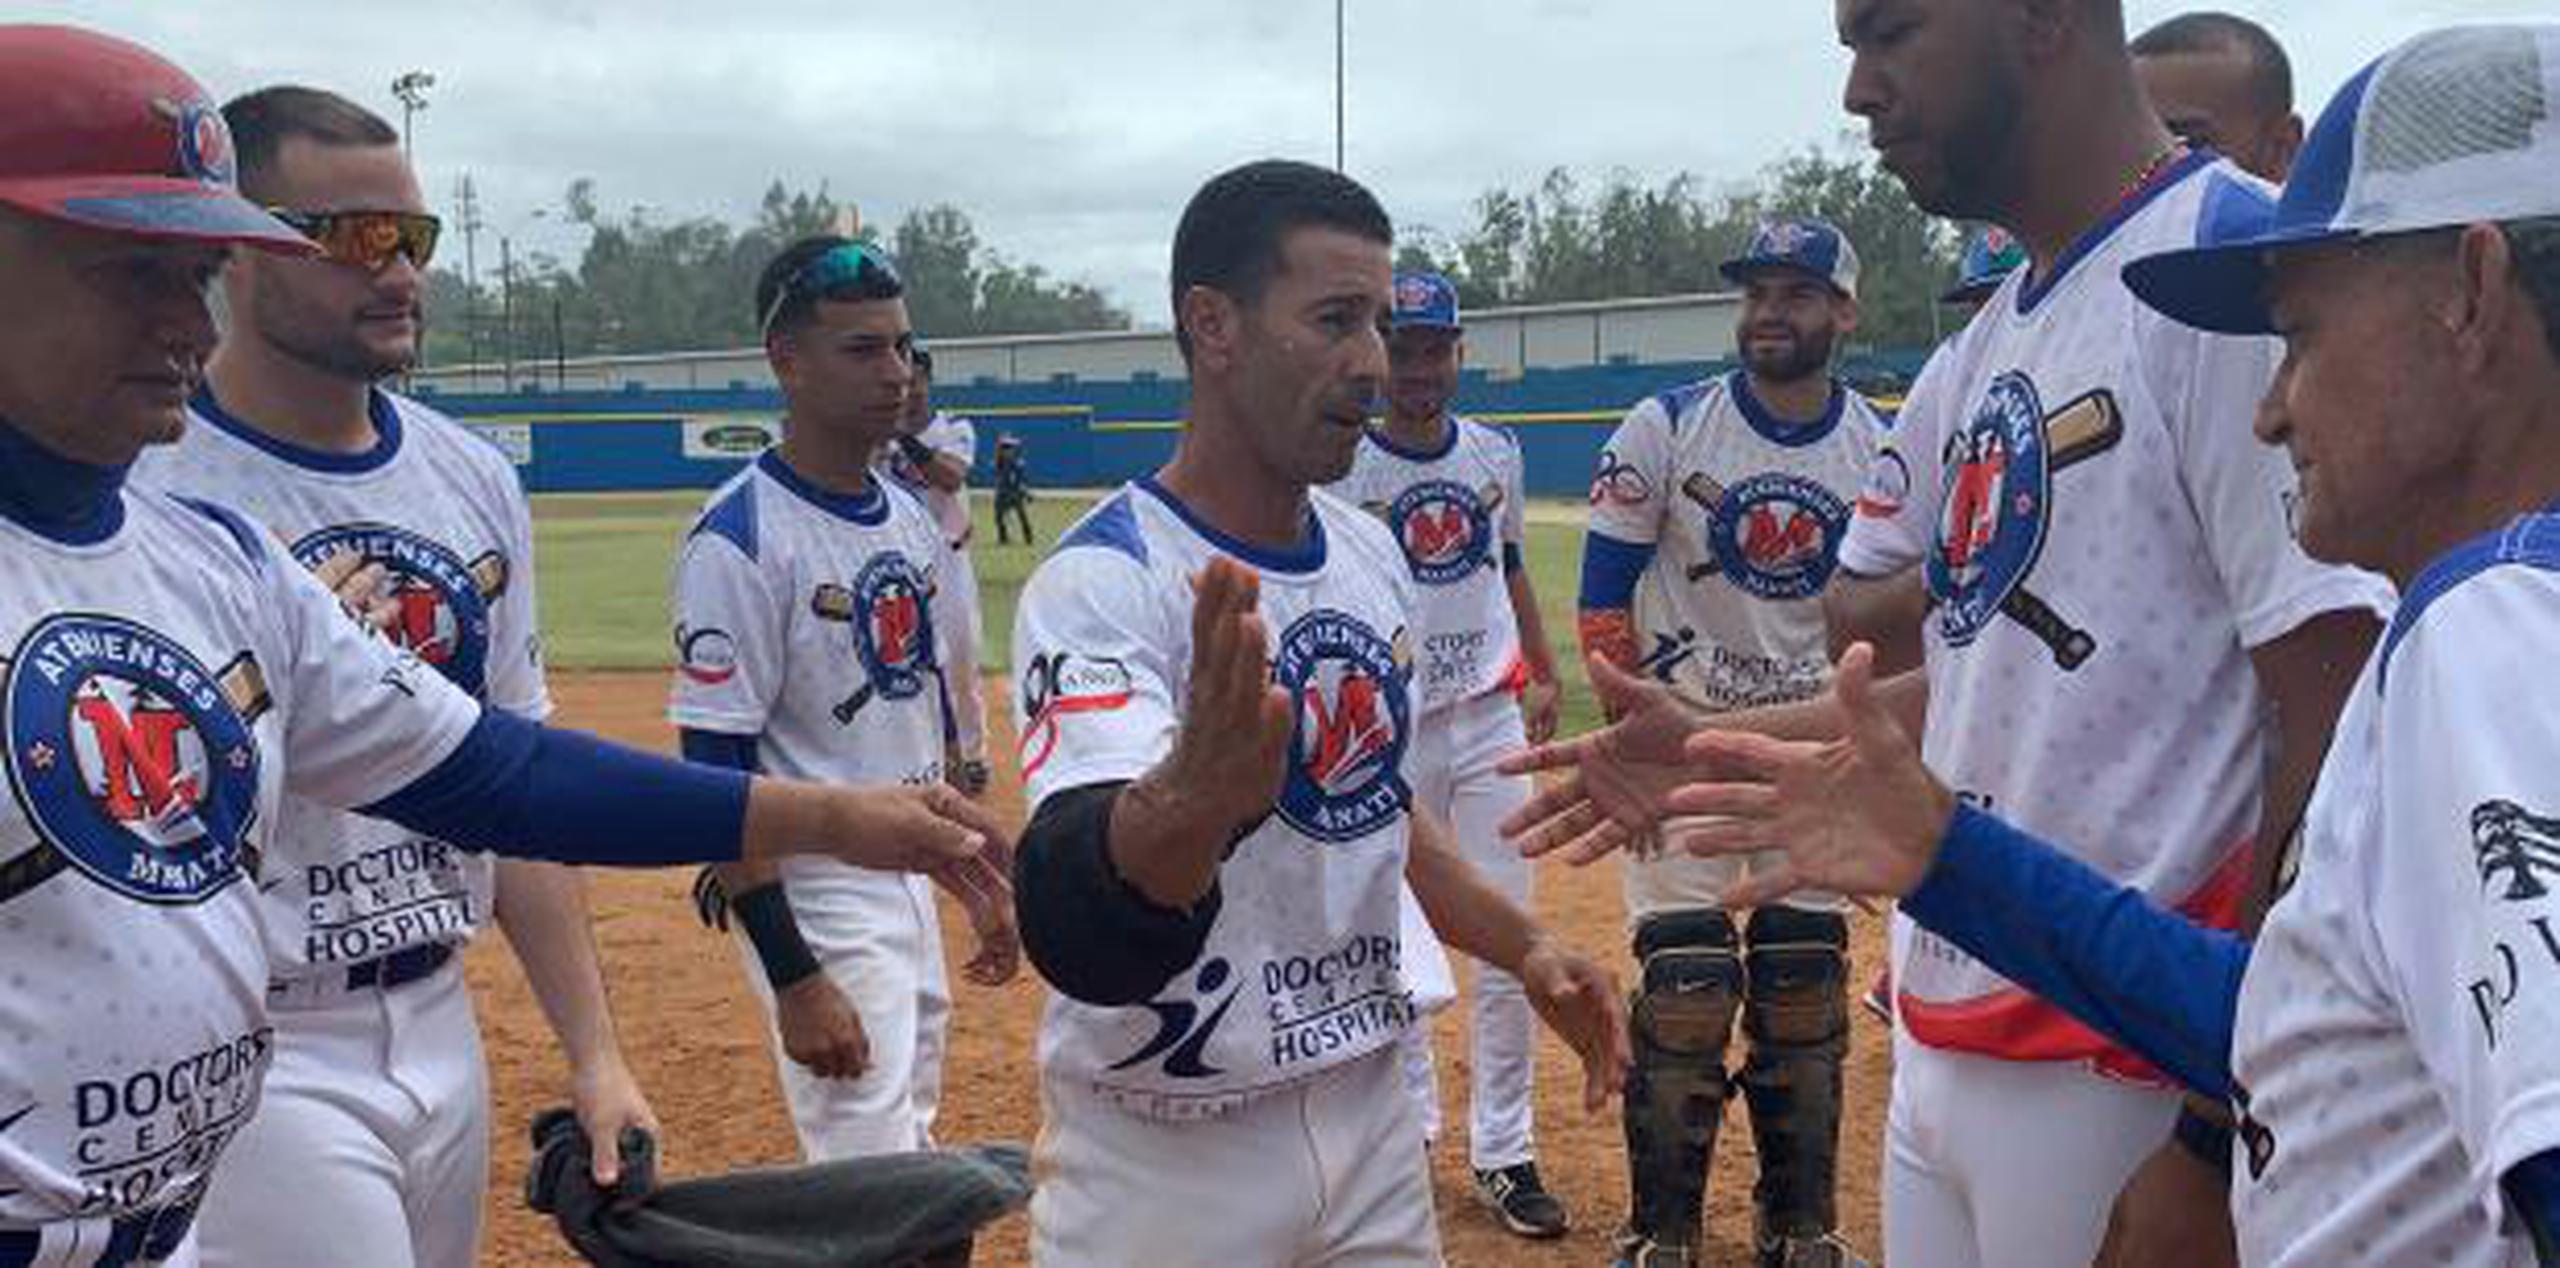 Capitaneados por el jugador dirigente José Ponce, al centro, Manatí  clasifica por primera vez desde el 2016.  (suministrada)